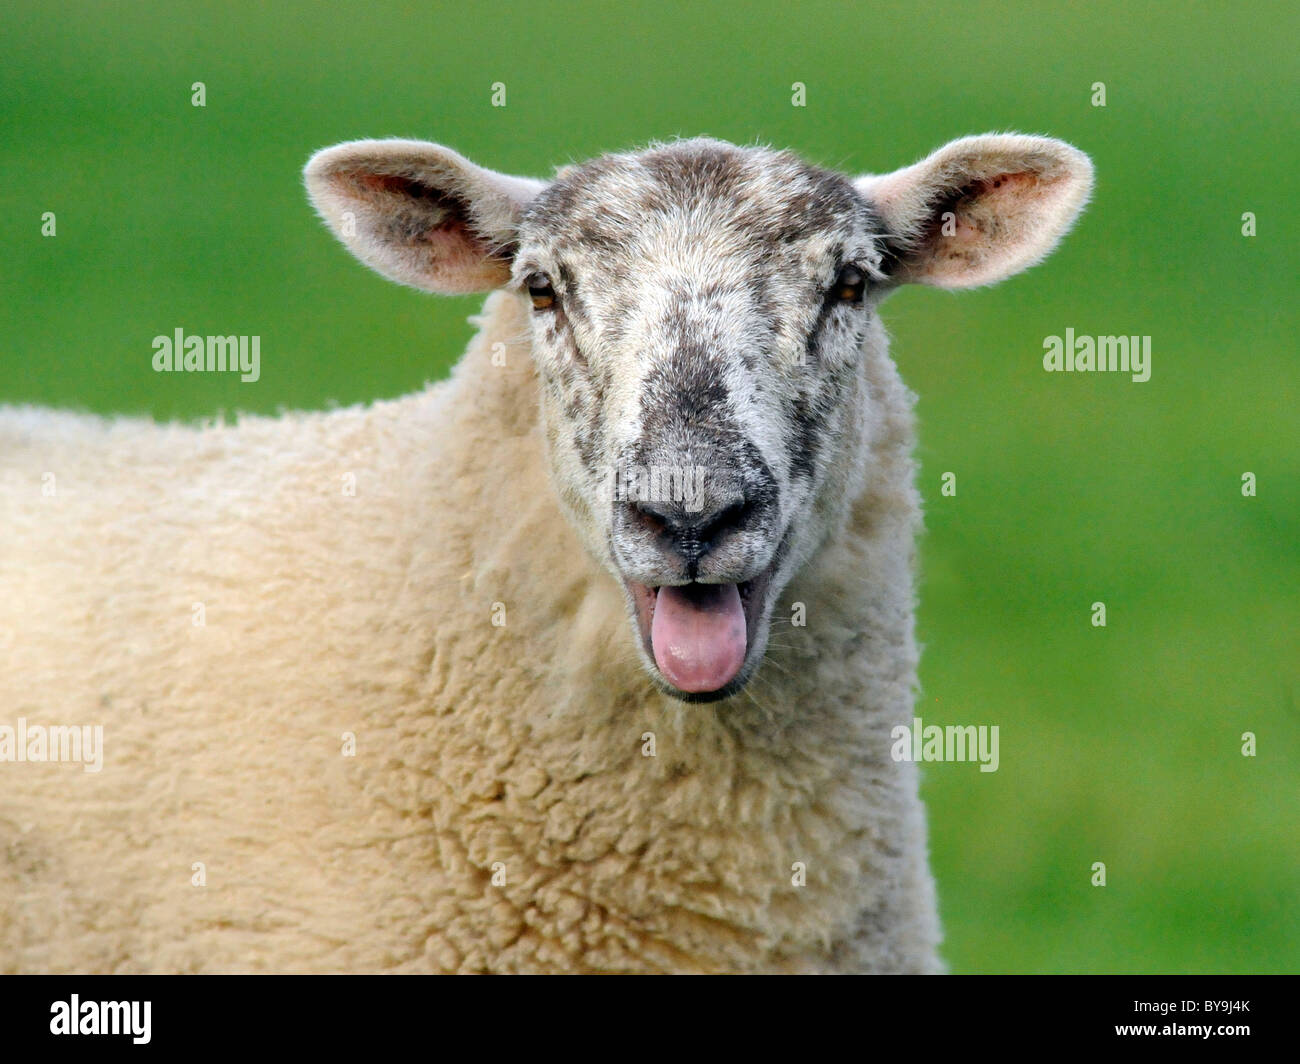 Una oveja baah baaing haciendo un sonido. Foto de stock